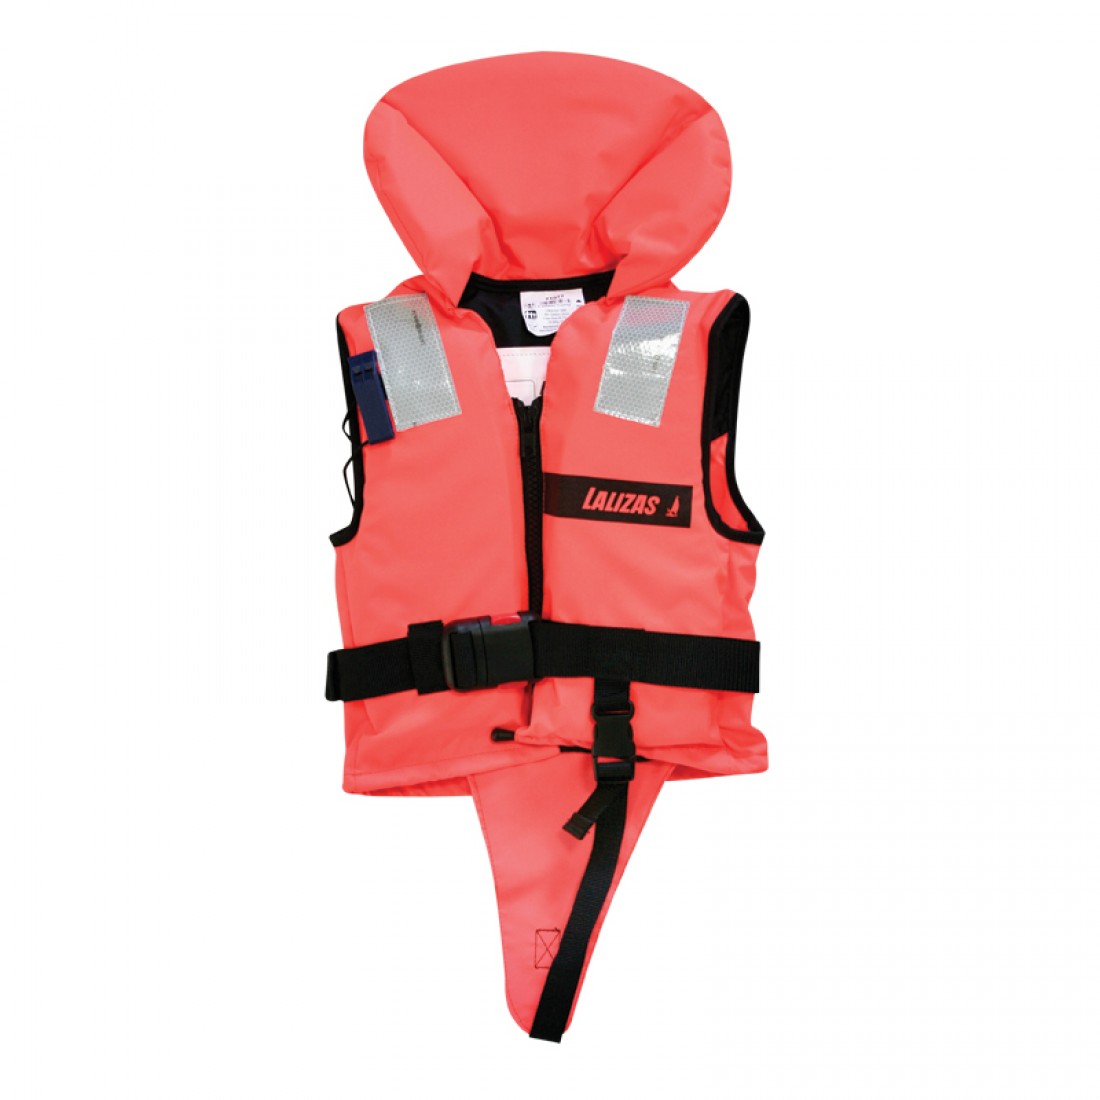 Спасательные жилеты спб. Жилет ISO 150n lifejacket.child. Lifeyacket спасательный жилет. Жилет спасательный Life Jacket. Жилет спасательный Baby 40 кг.